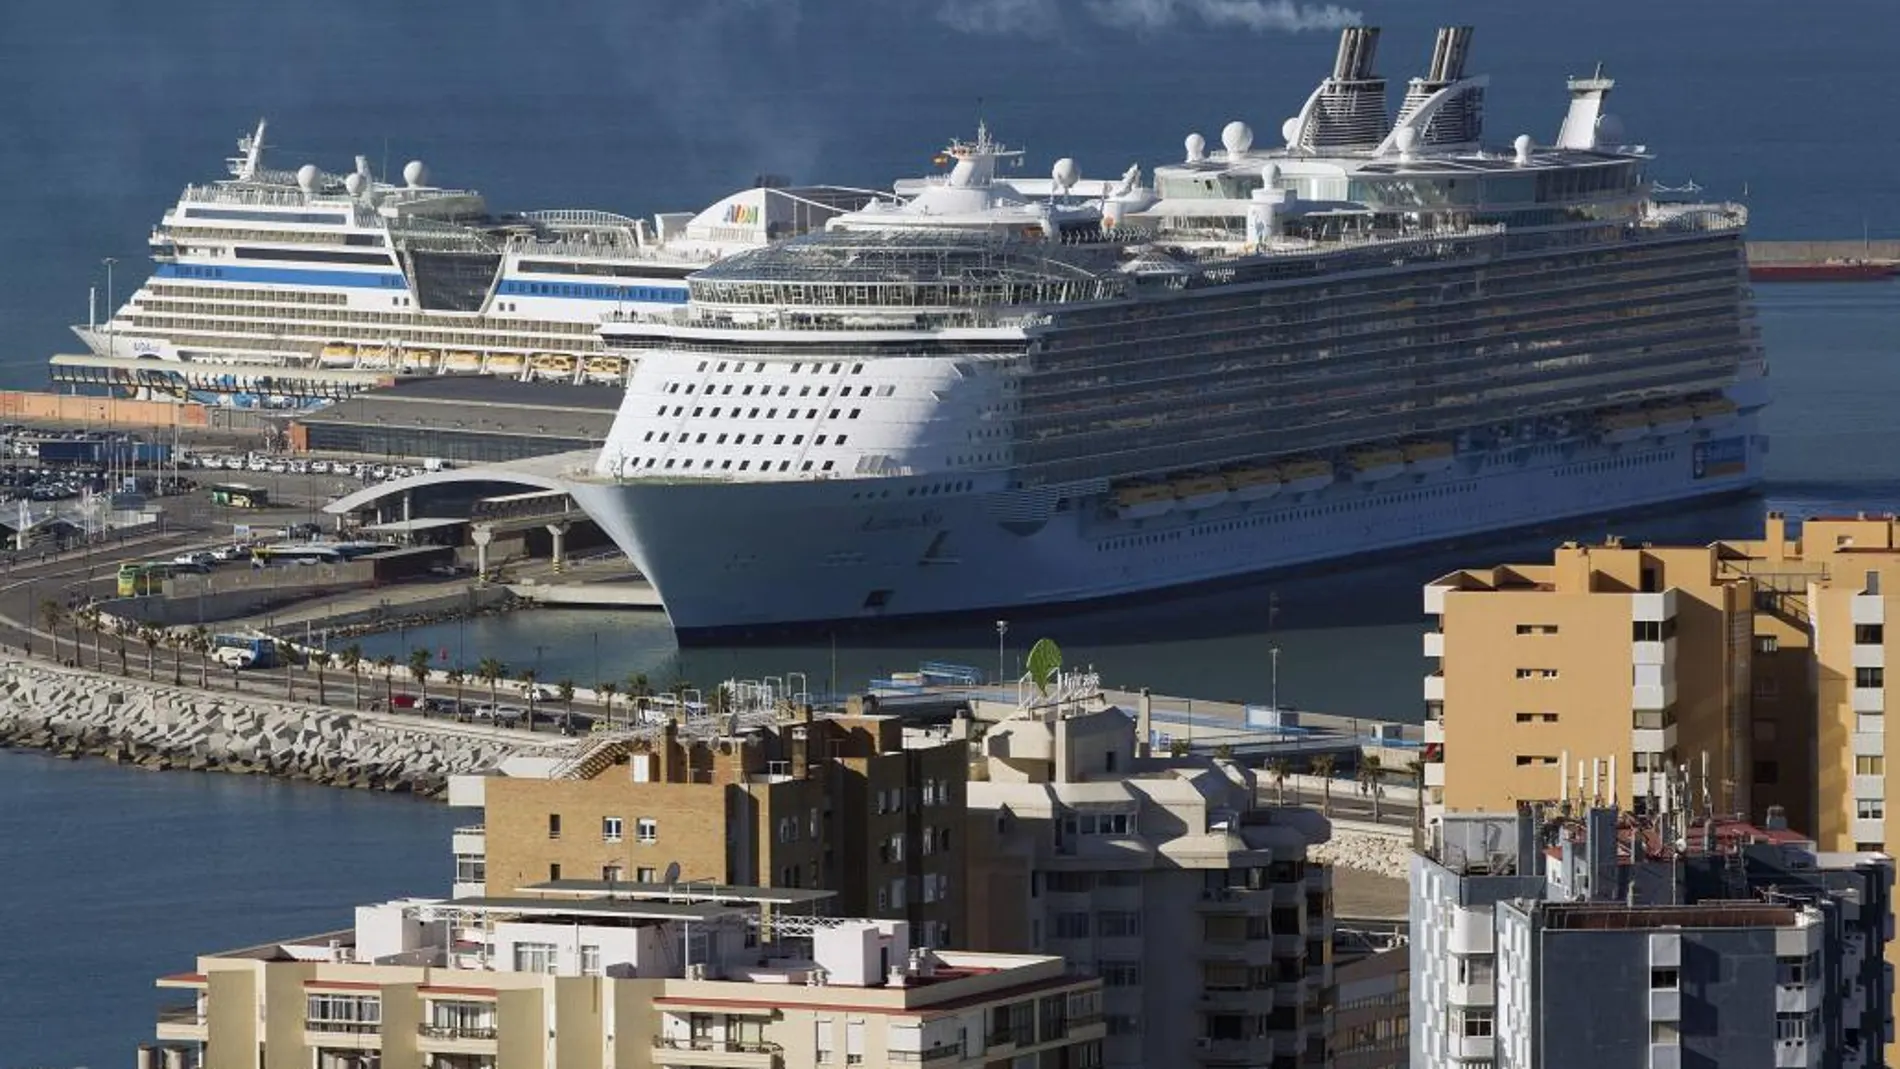 Vista del crucero más grande del mundo, el 'Allure of the Seas' de Royal Caribbean, con capacidad para más de 6.300 pasajeros, tras llegar al puerto de Málaga, el primero en su escala en Europa procedente del Caribe.